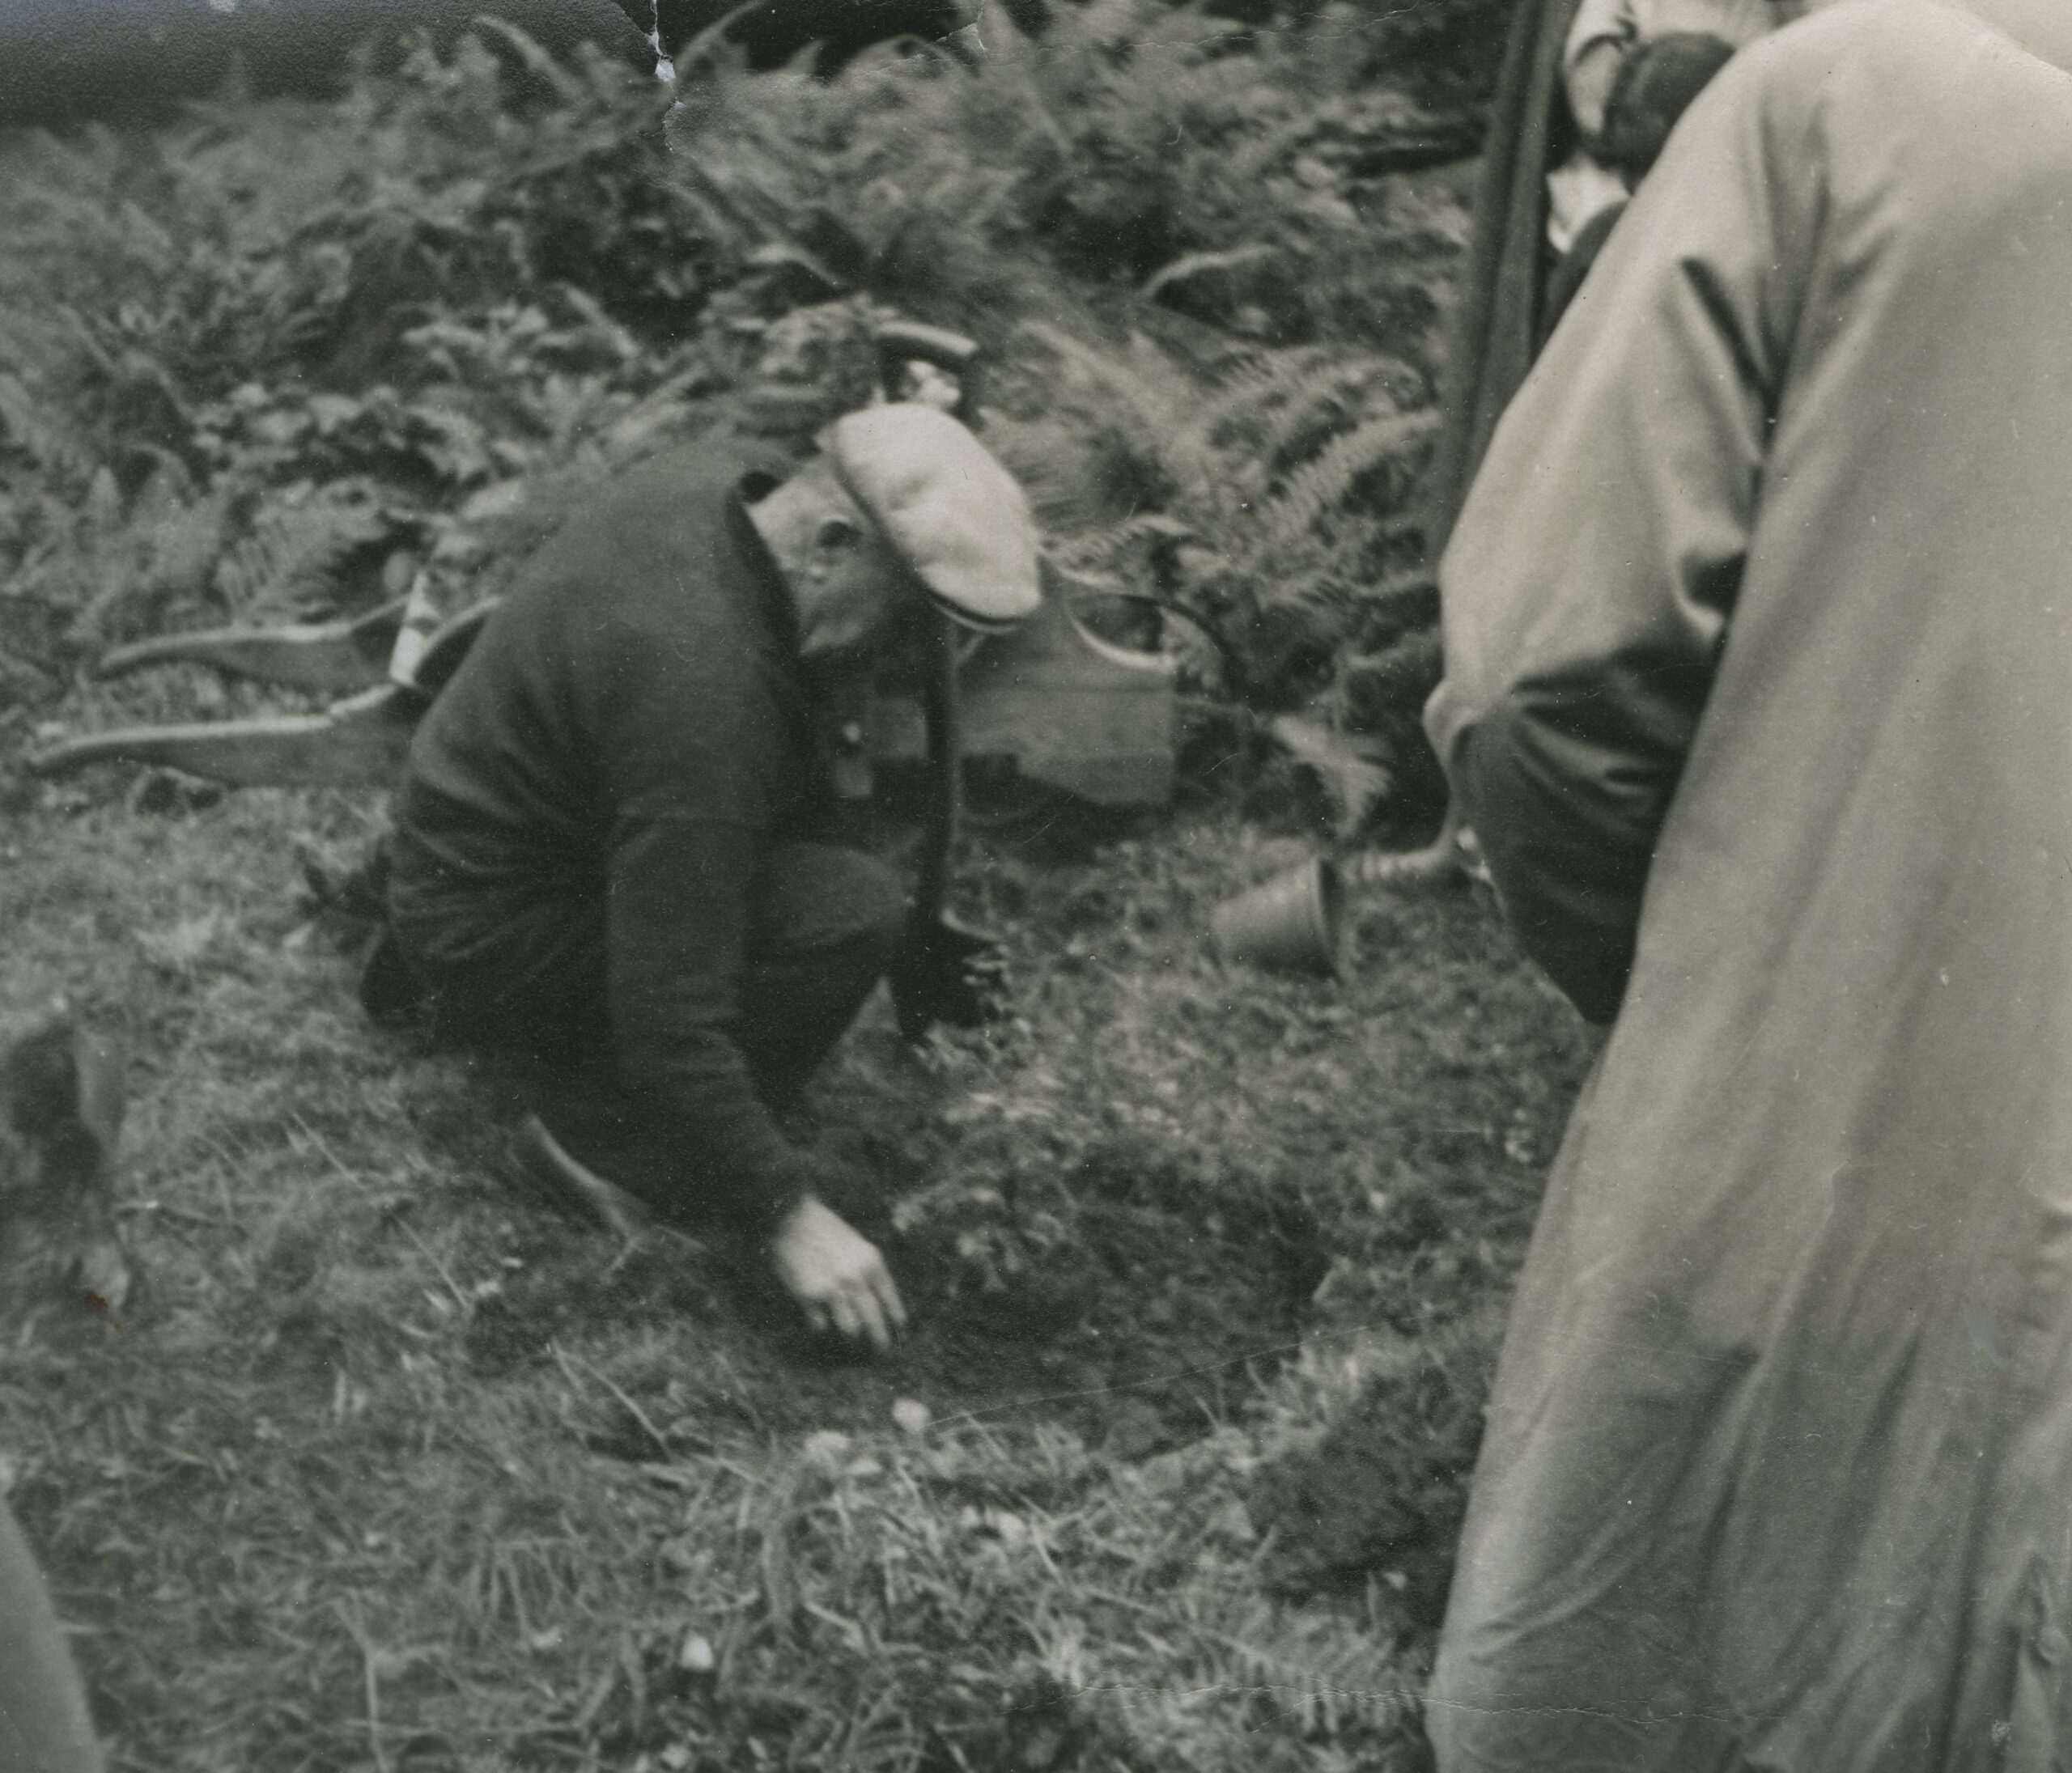  Nicol Luke planting rare tree Pinetum Ardkinglas